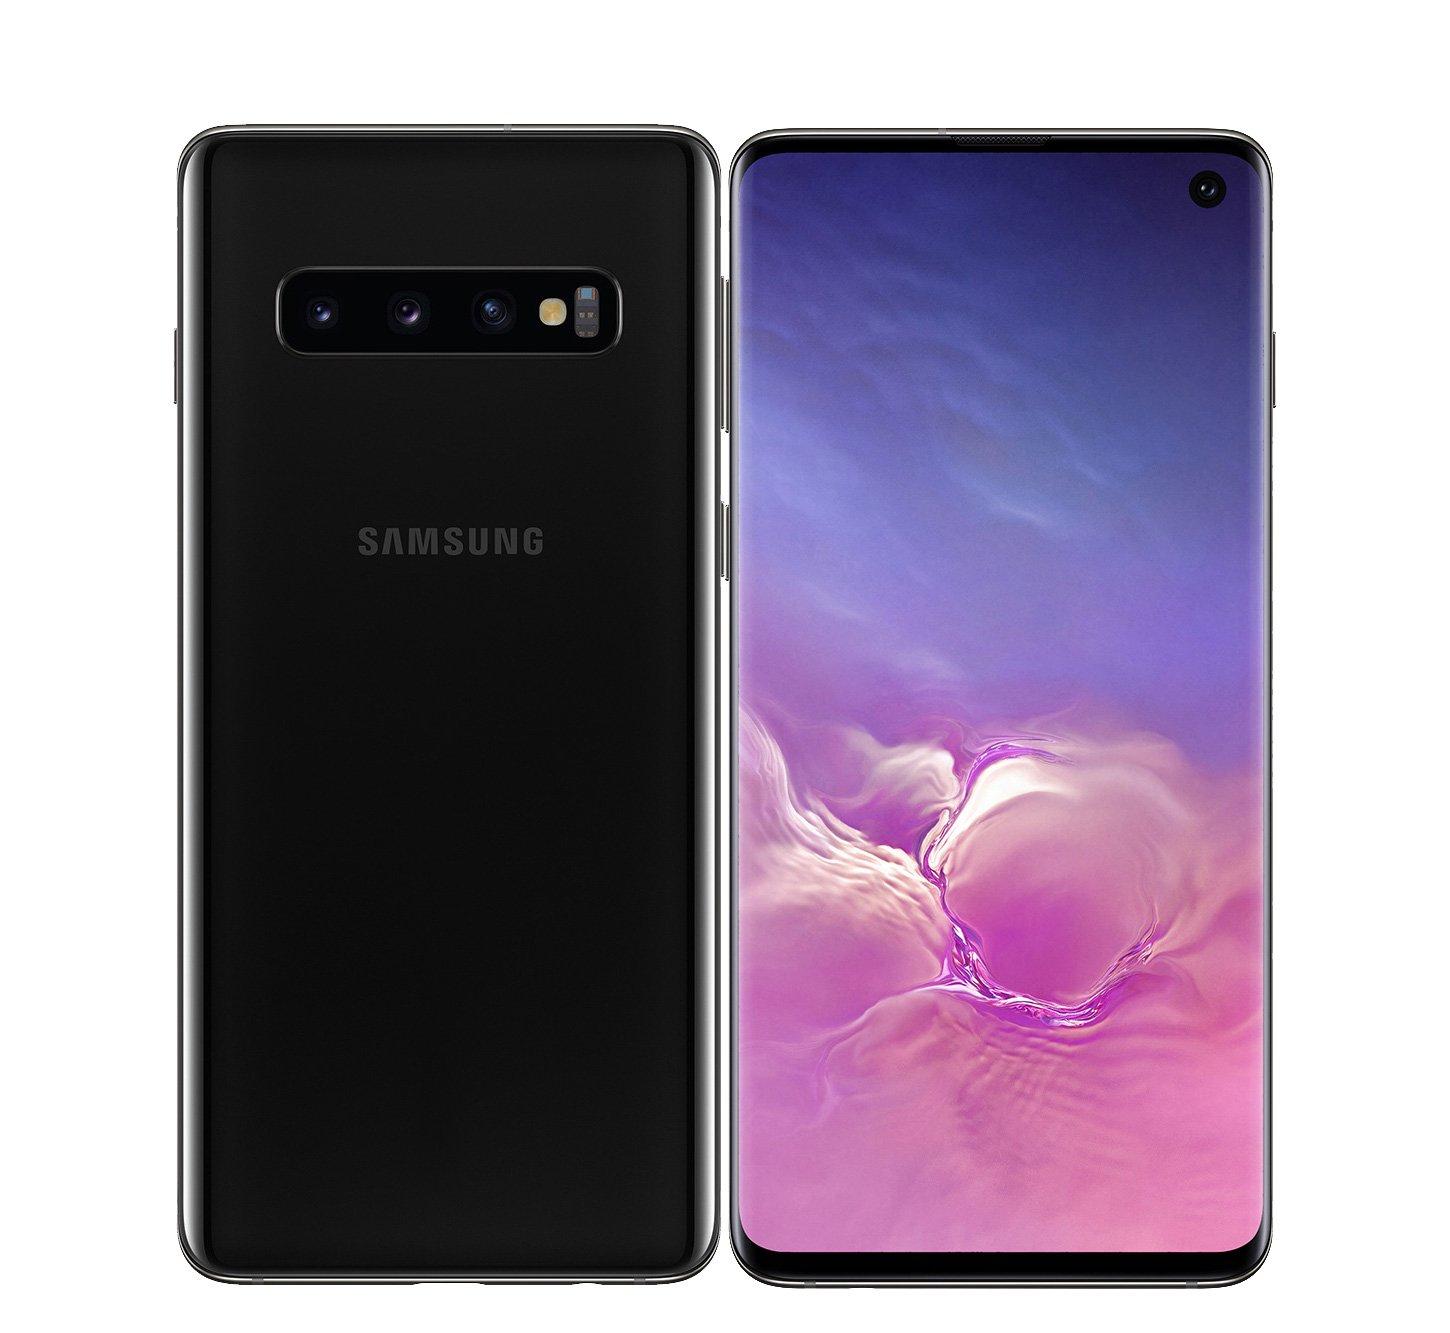 Harga Samsung Galaxy On 7 Dan Spesifikasi Juni 2017